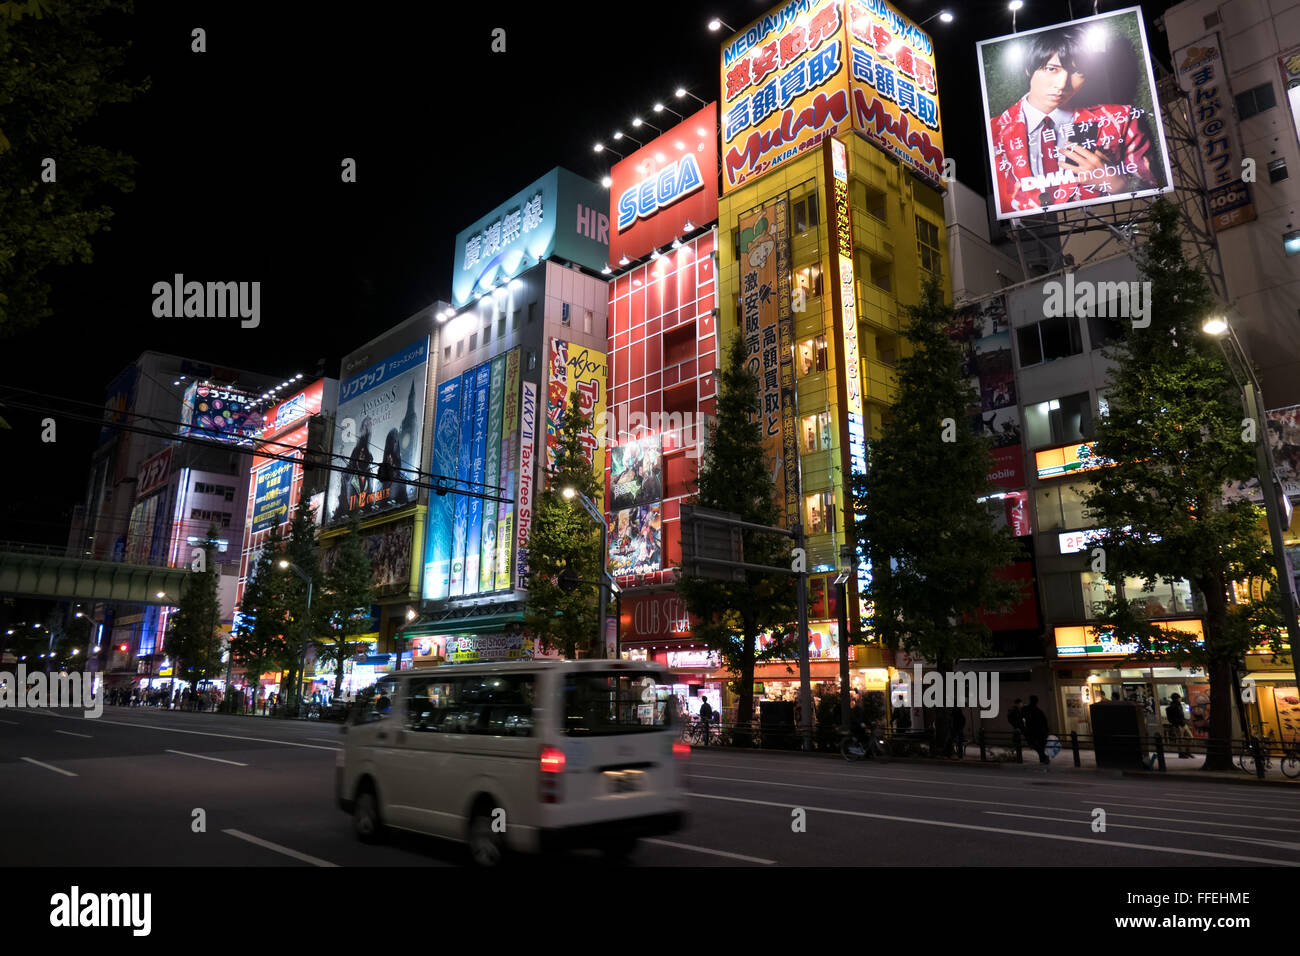 La regione di Akihabara, Tokyo, Giappone, Asia. Street, strada, edifici, luci al neon, segni, cartelloni di notte, people shopping Foto Stock